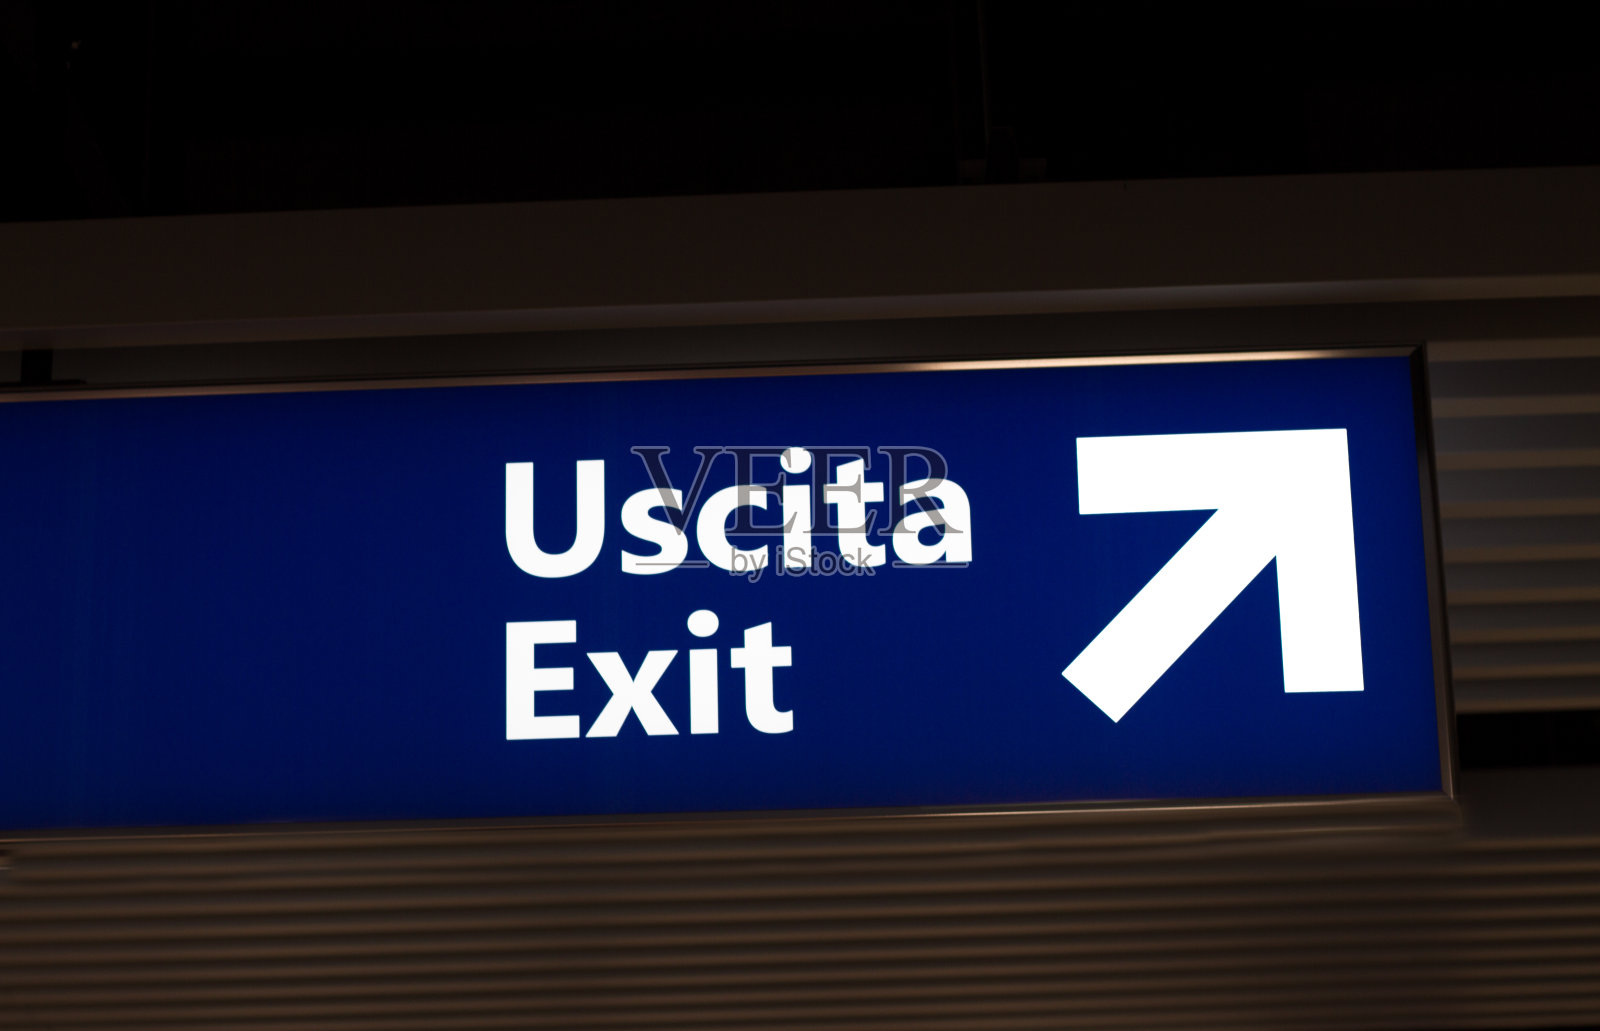 意大利标识:绿箭机场“乌西塔”照片摄影图片